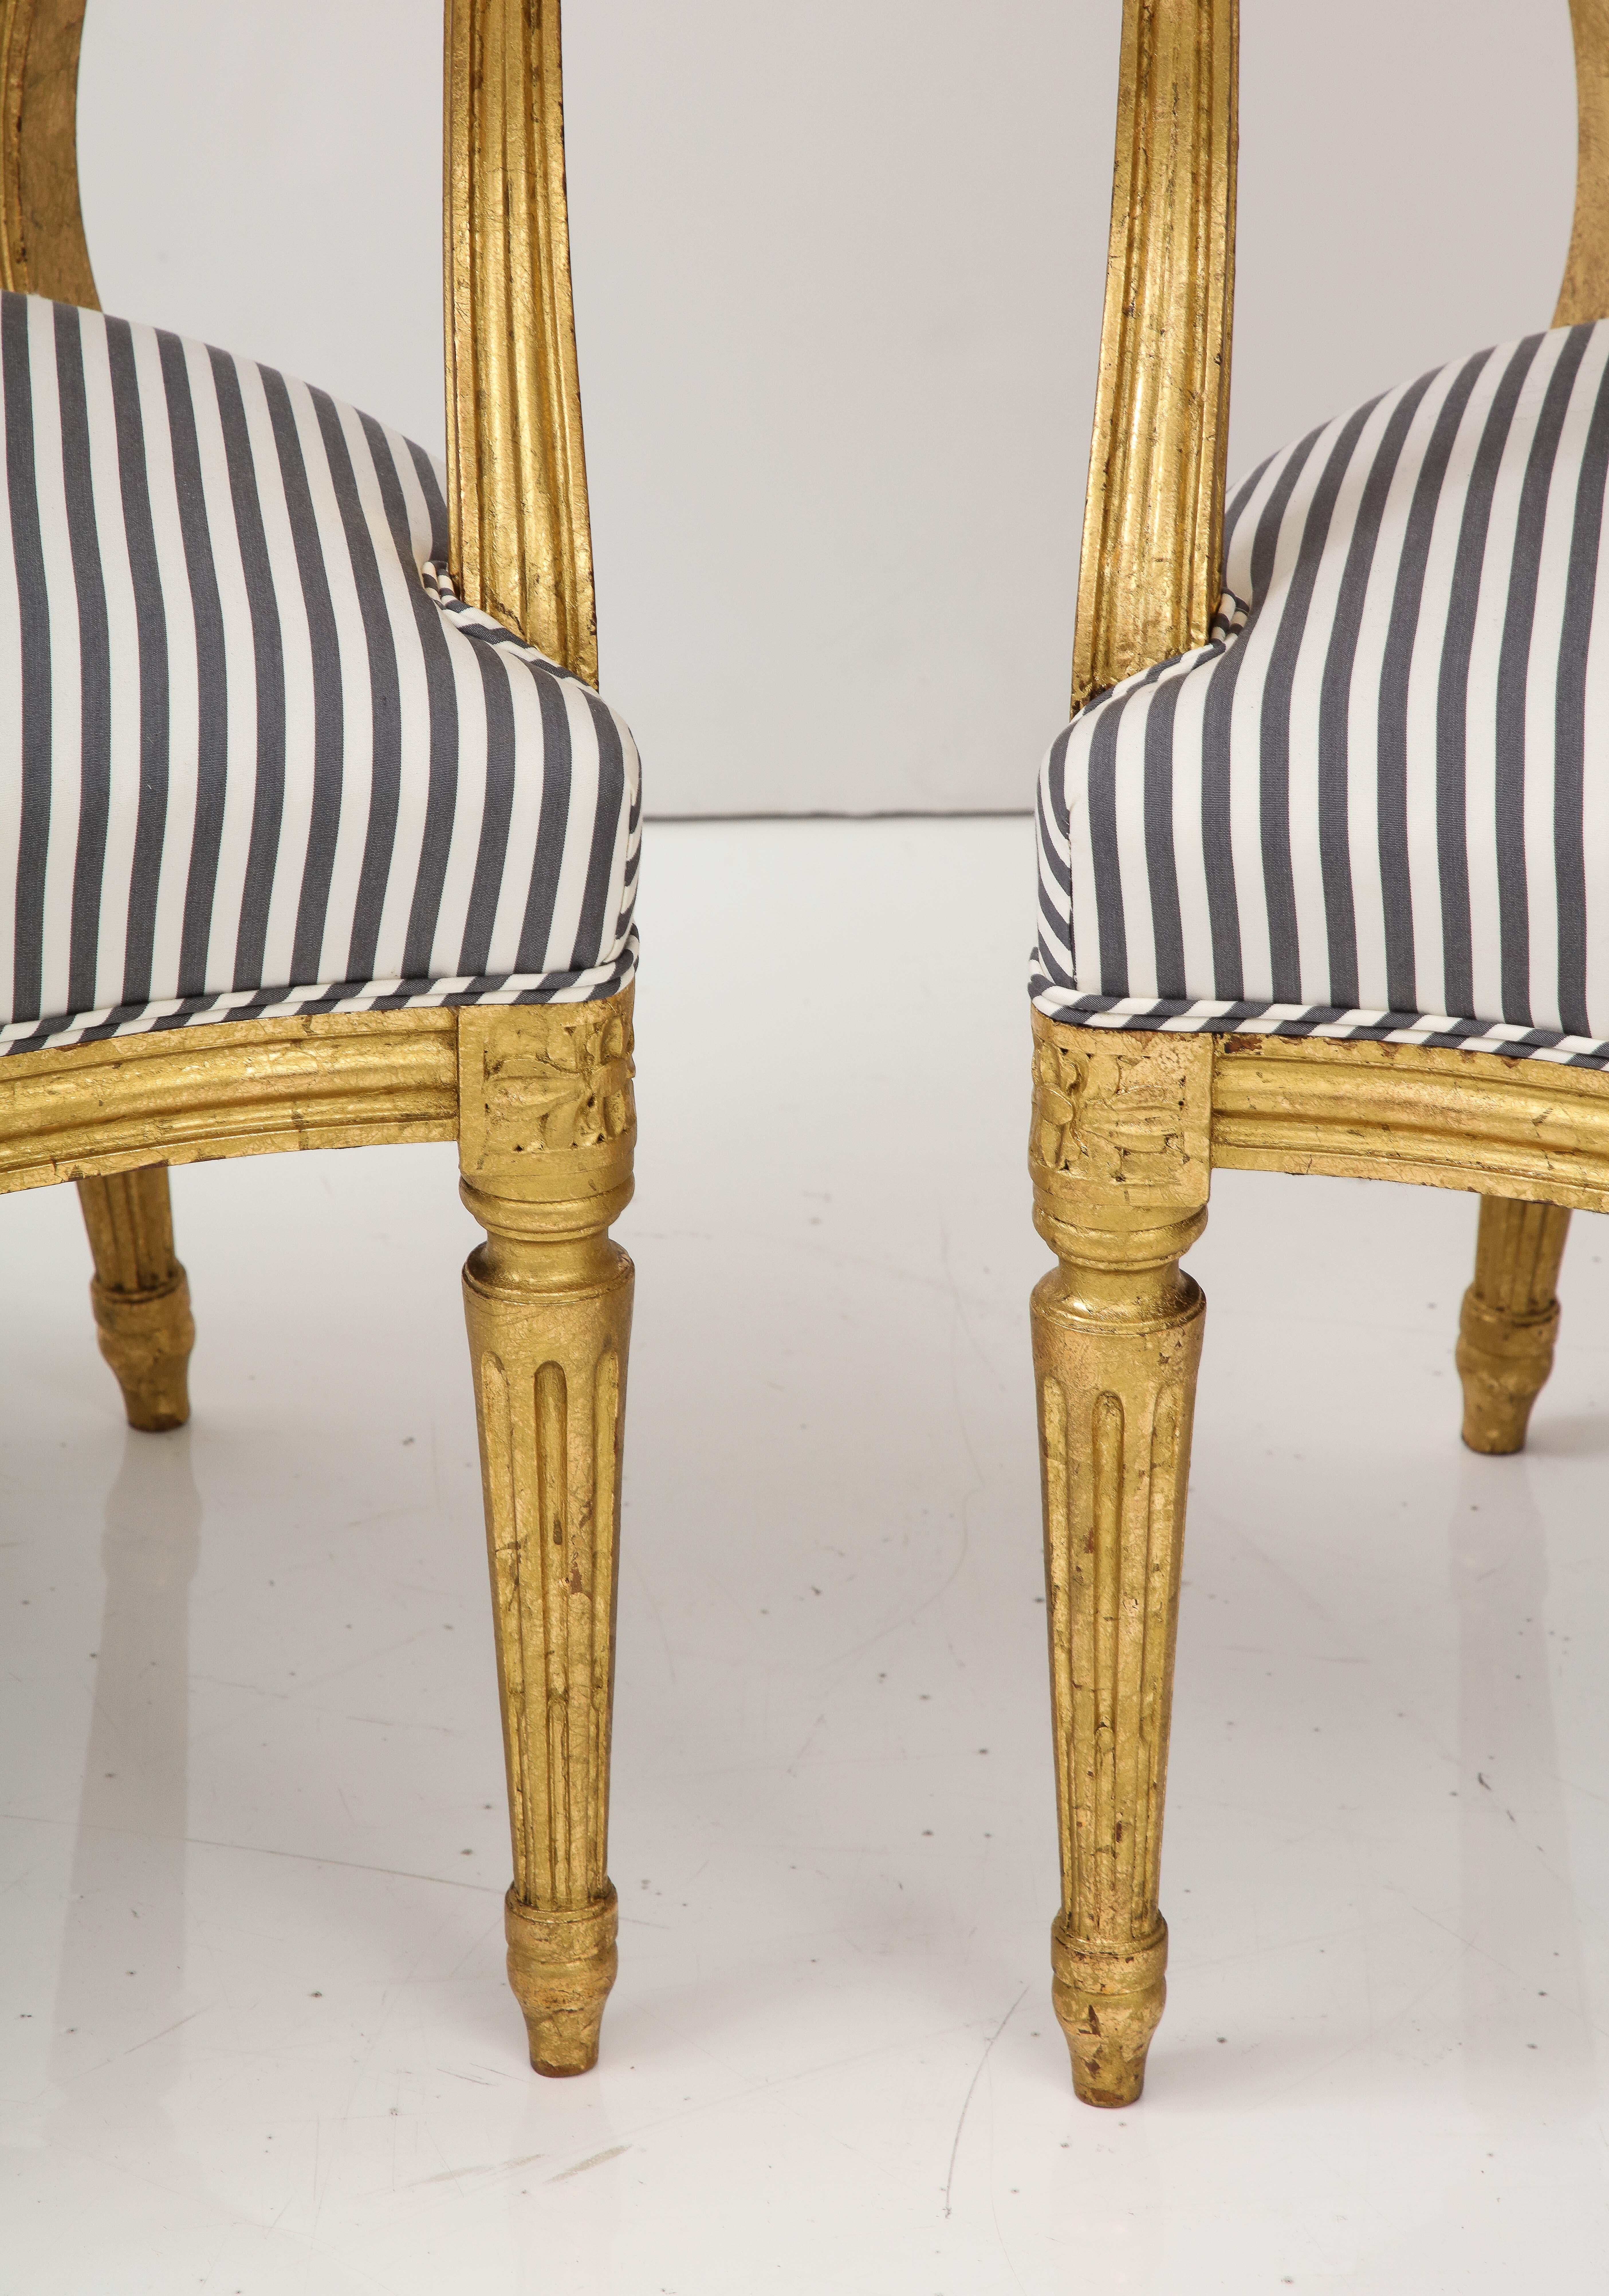 Bei diesem schicken Paar vergoldeter Sessel im Louis-XVI-Stil trifft Alt auf Neu.  Wir lieben die schlichte Eleganz des Louis XVI-Stils, und diese Stühle weisen viele der für diesen Stil charakteristischen Details auf - eine ovale Rückenlehne,